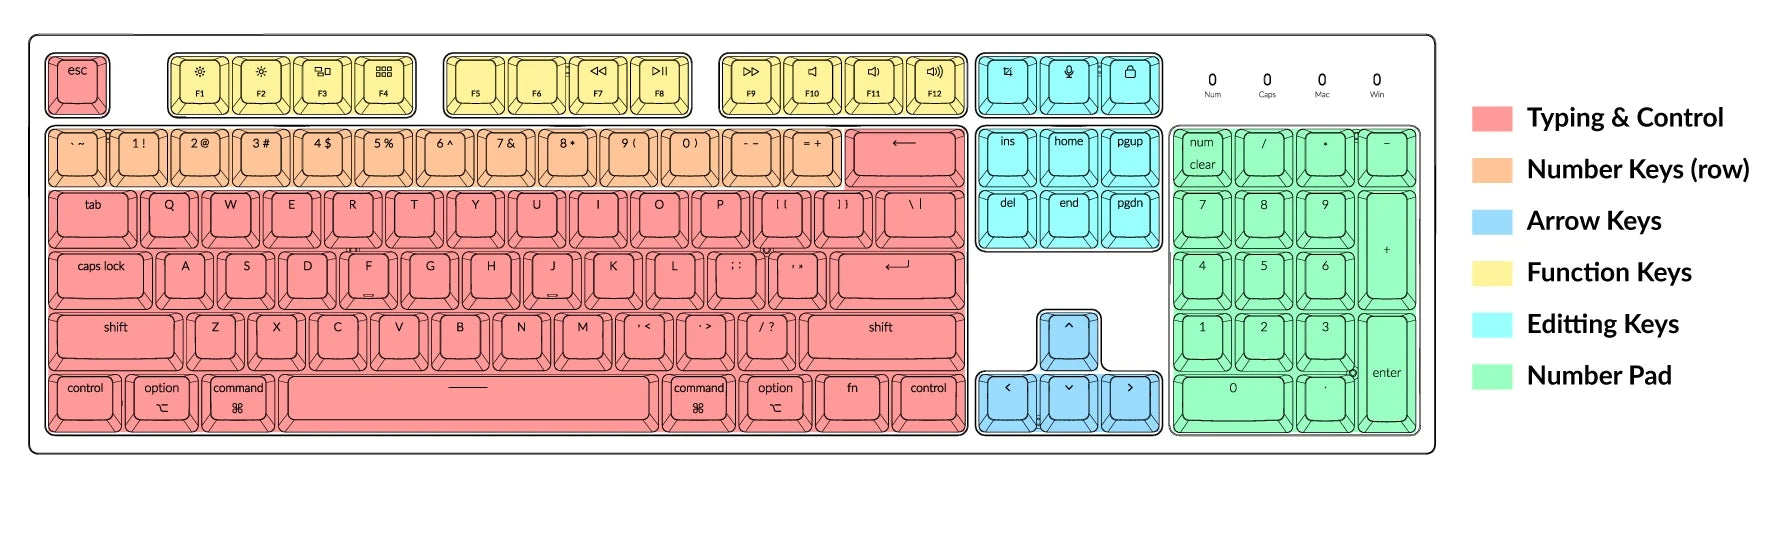 鍵盤尺寸和佈局-keyboard-keychron 無線機械鍵盤